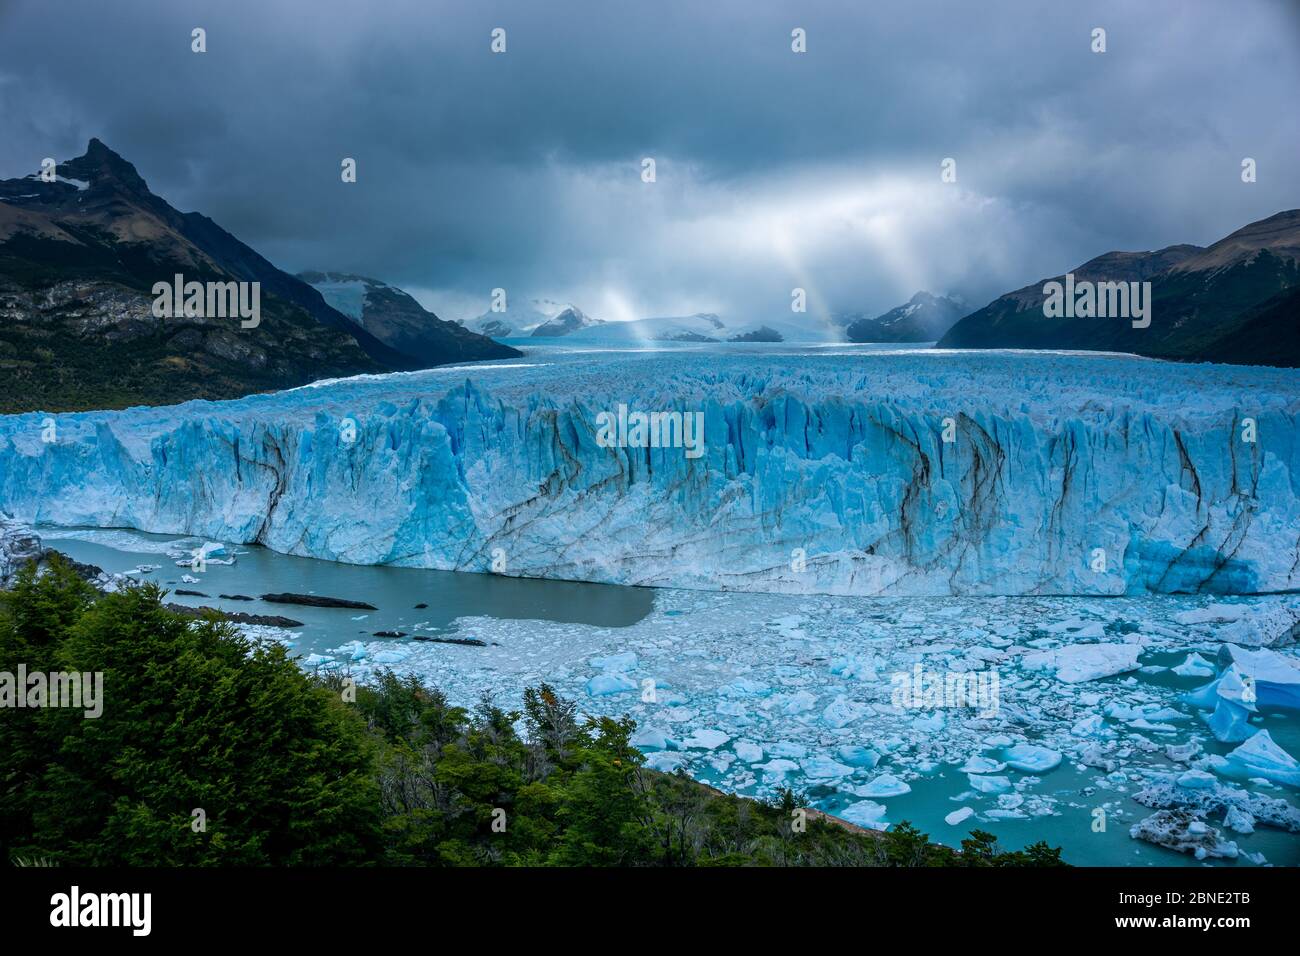 Parete di ghiaccio di un ghiacciaio con alcuni pezzi di ghiaccio in acqua di fronte a una foresta. Ghiacciaio Perito Moreno in Argentina Foto Stock